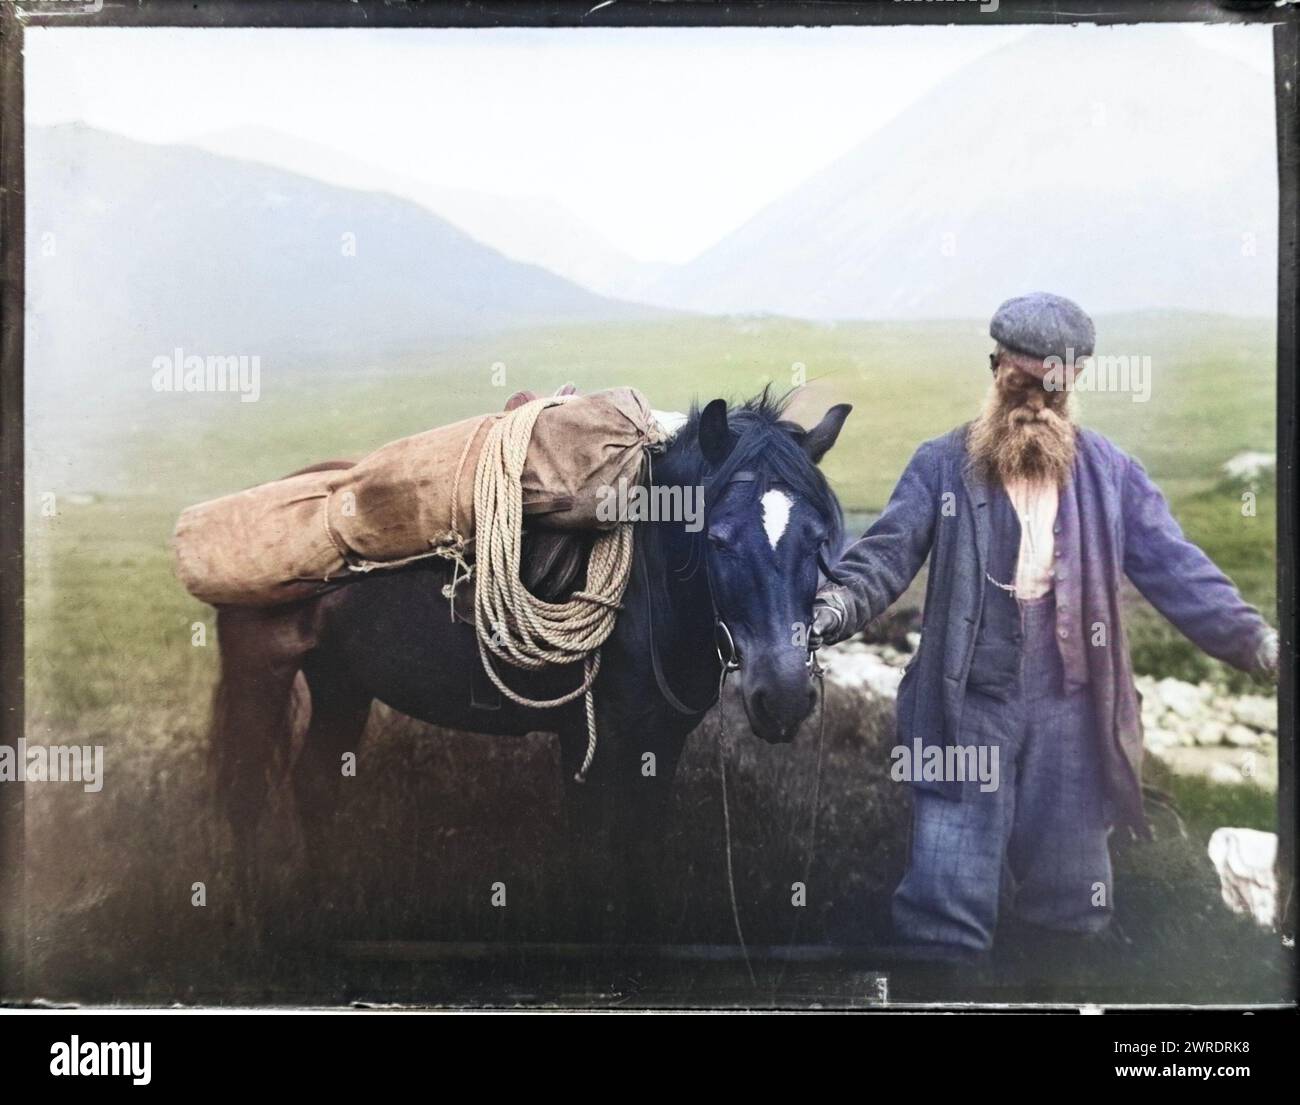 Immagine colorata di un vecchio con un branco di cavalli che trasportano attrezzature per l'alpinismo, si pensa che sia Cuillin Mountains, Skye, Scozia, Regno Unito c 1900-1920 Foto Stock